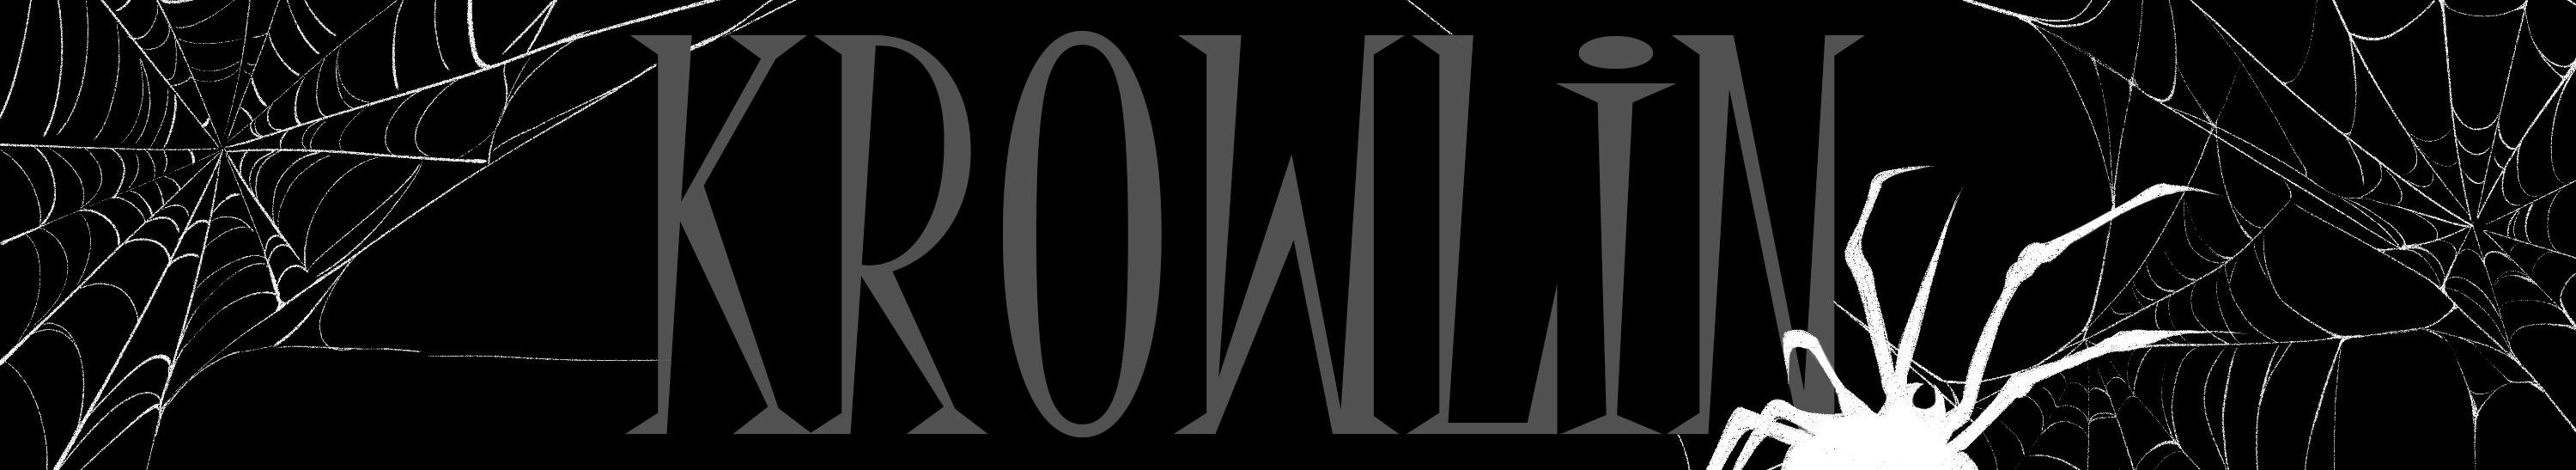 Misha Krowlin's profile banner